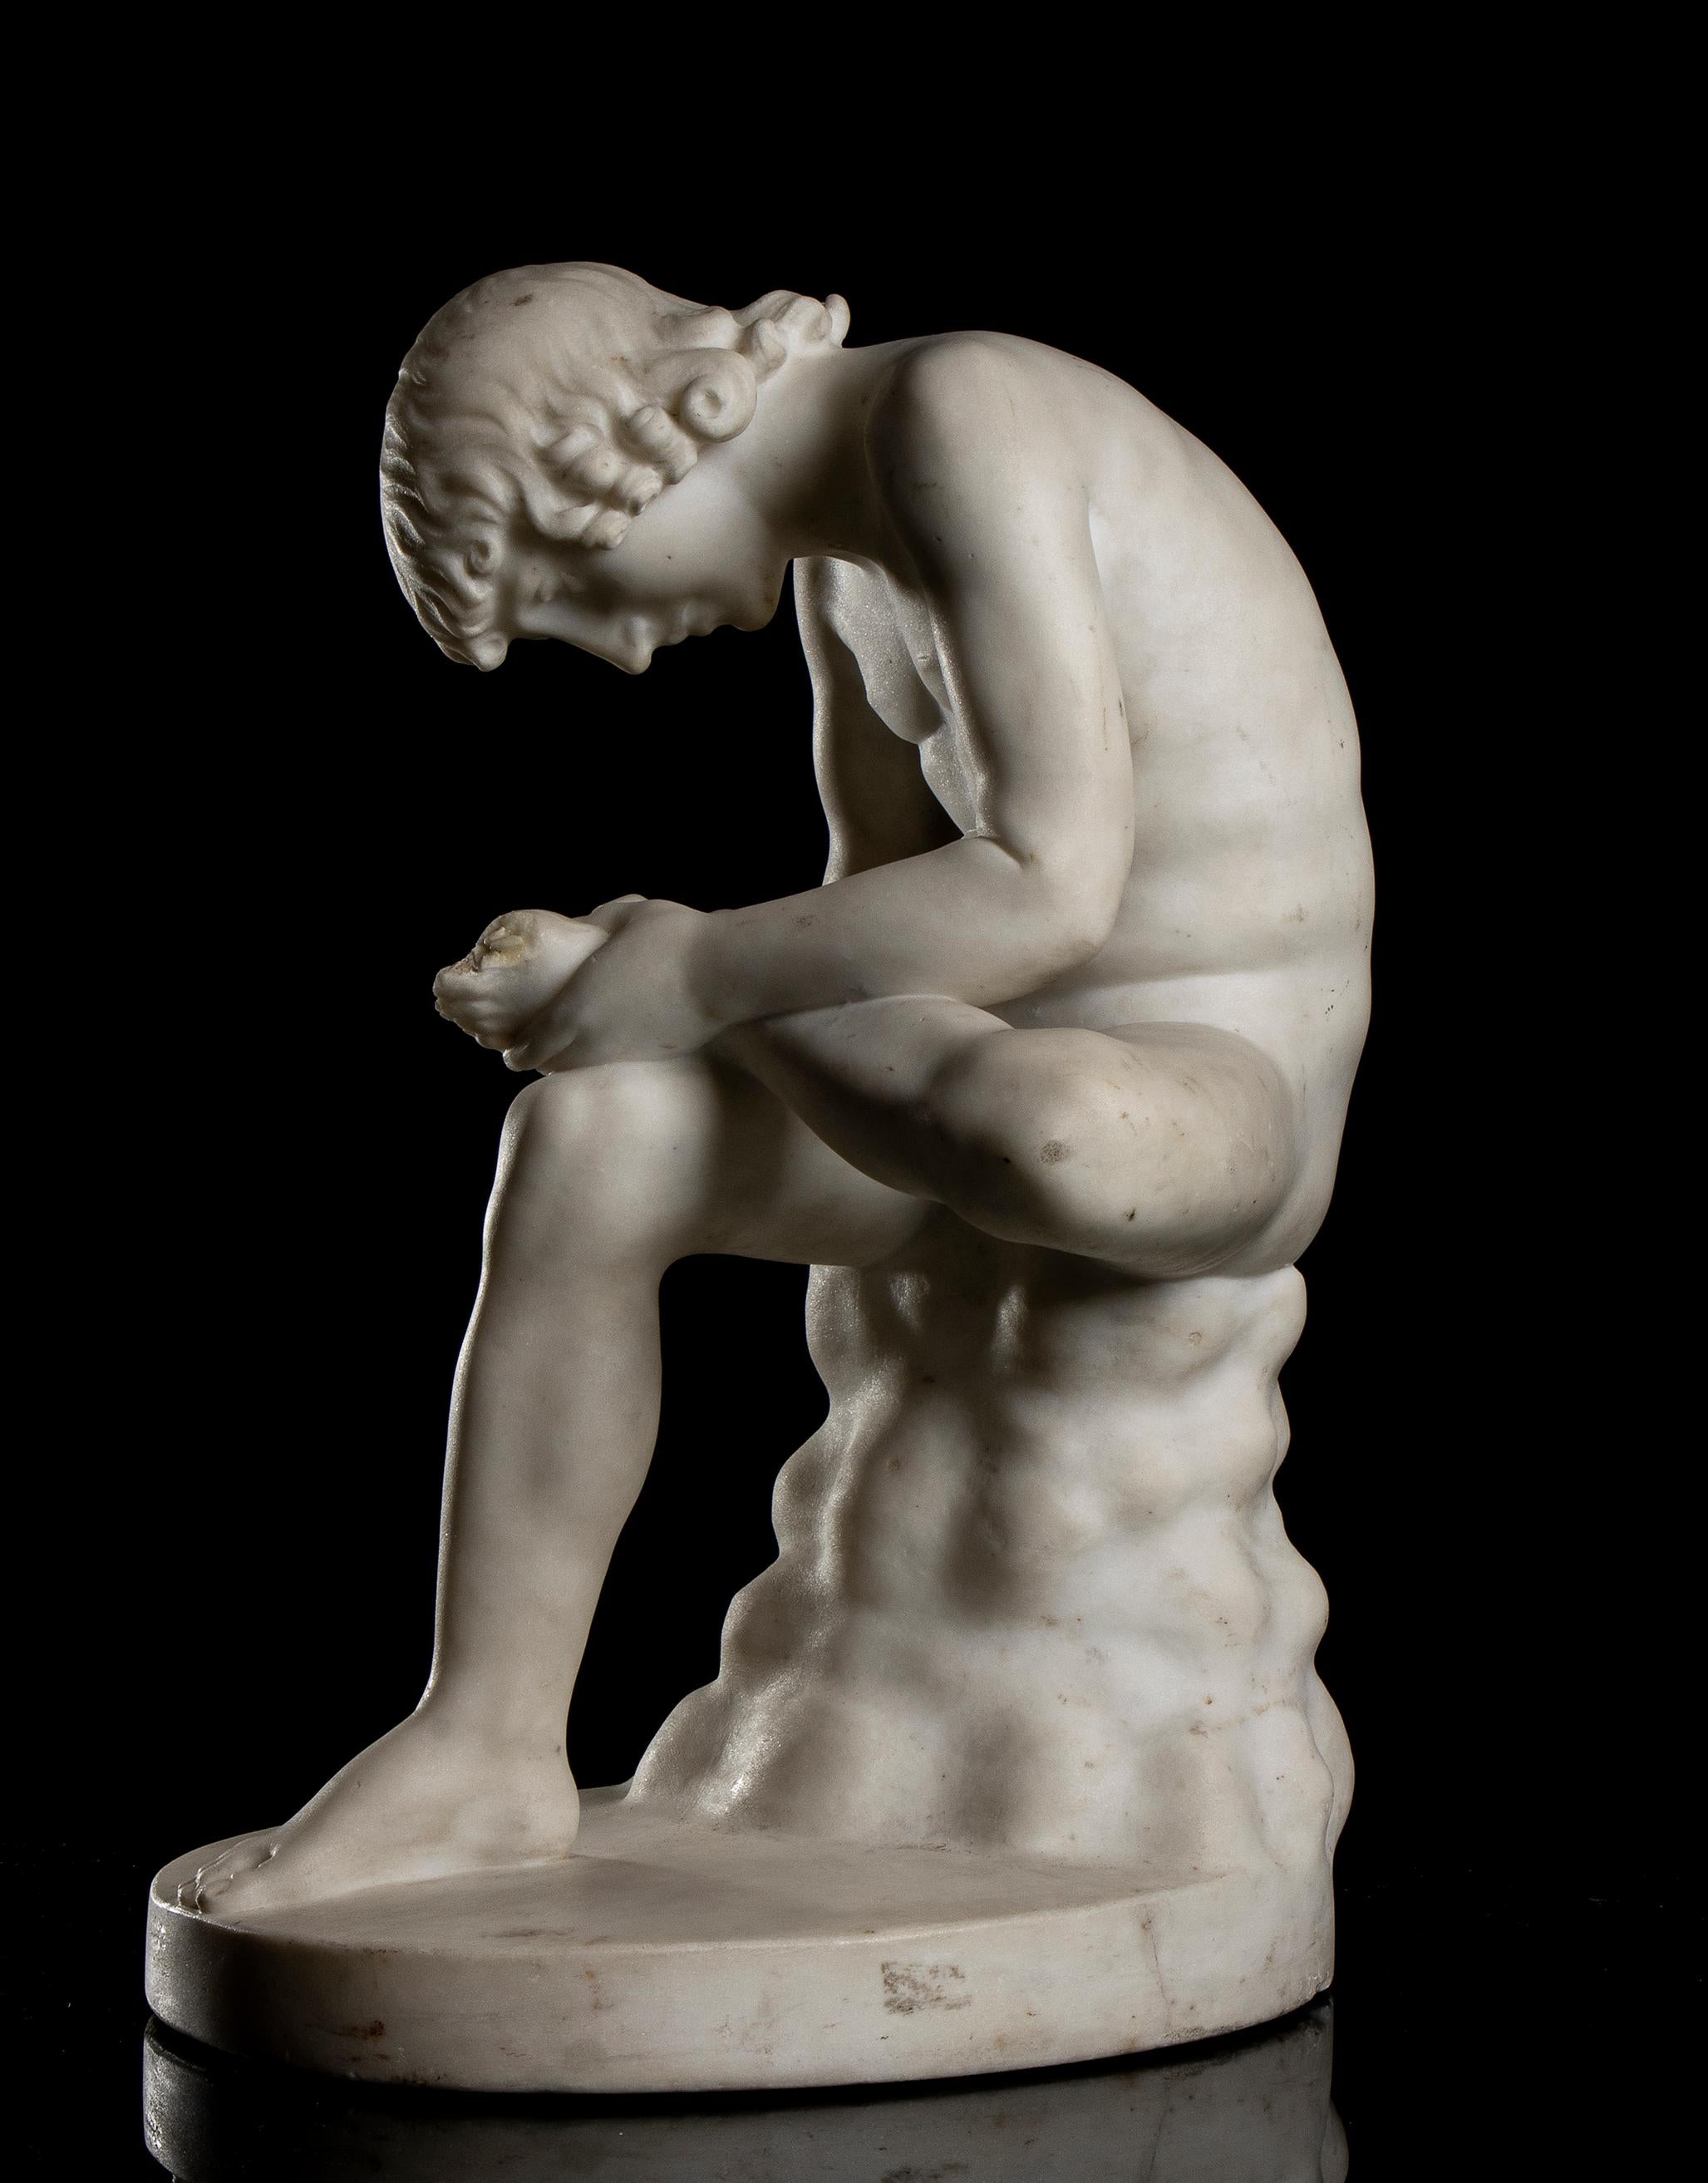 Eine Skulptur des Knaben mit Thor im Stil der Grand Tour, die im 19. Jahrhundert in Italien aus weißem Marmor geschnitzt wurde, in der Größe der Skulptur in den Uffizien in Florenz.
Die Statue stellt einen nackten Jungen dar, der auf einem Felsen